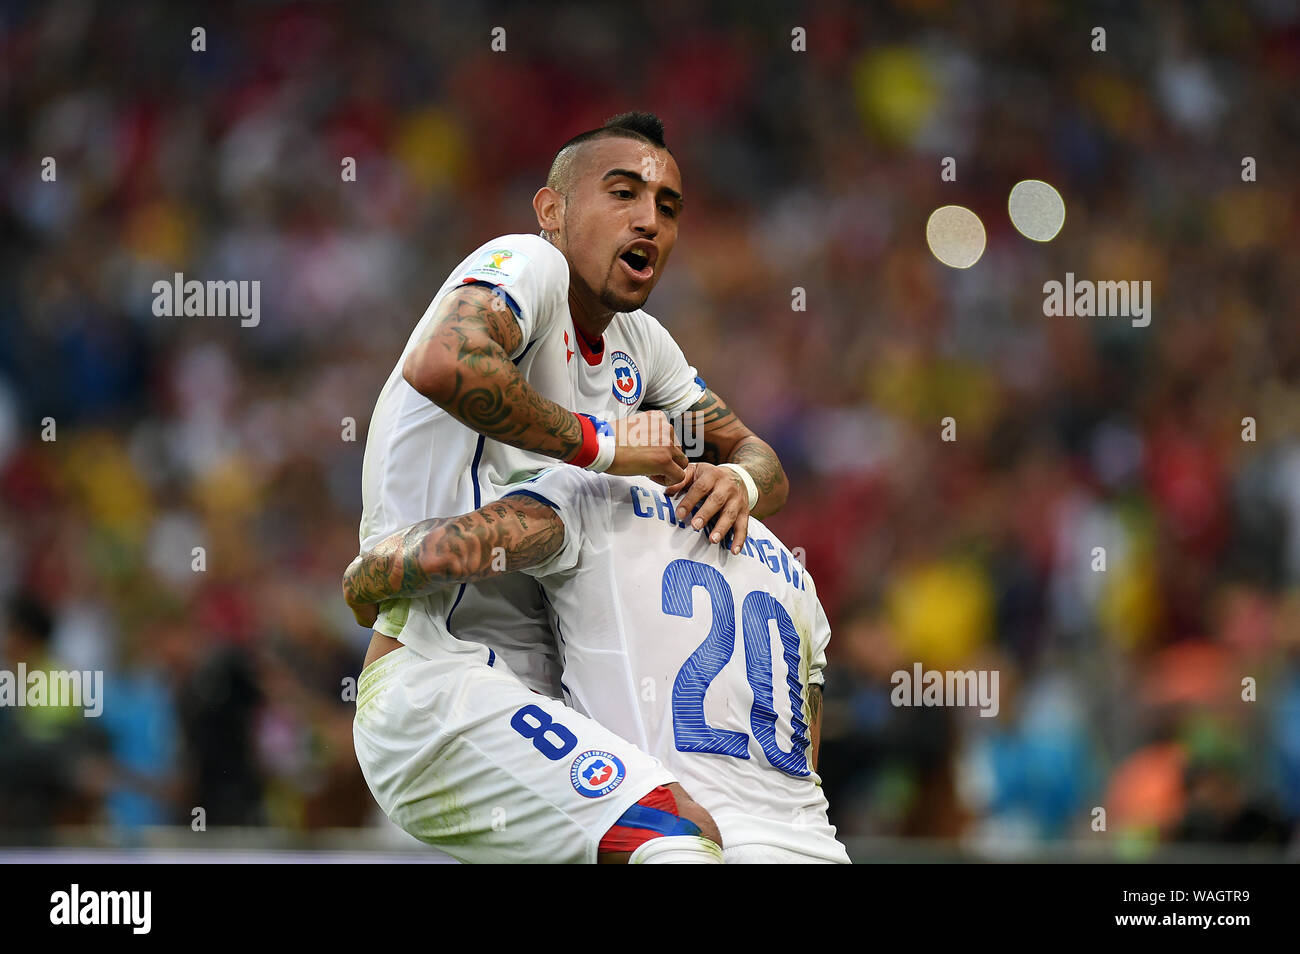 Rio de Janeiro, 18 giugno 2014. Il giocatore di calcio Charles Aránguiz celebra il suo obiettivo durante la partita, Spagna vs Cile, per la Coppa del mondo 2014 al ma Foto Stock